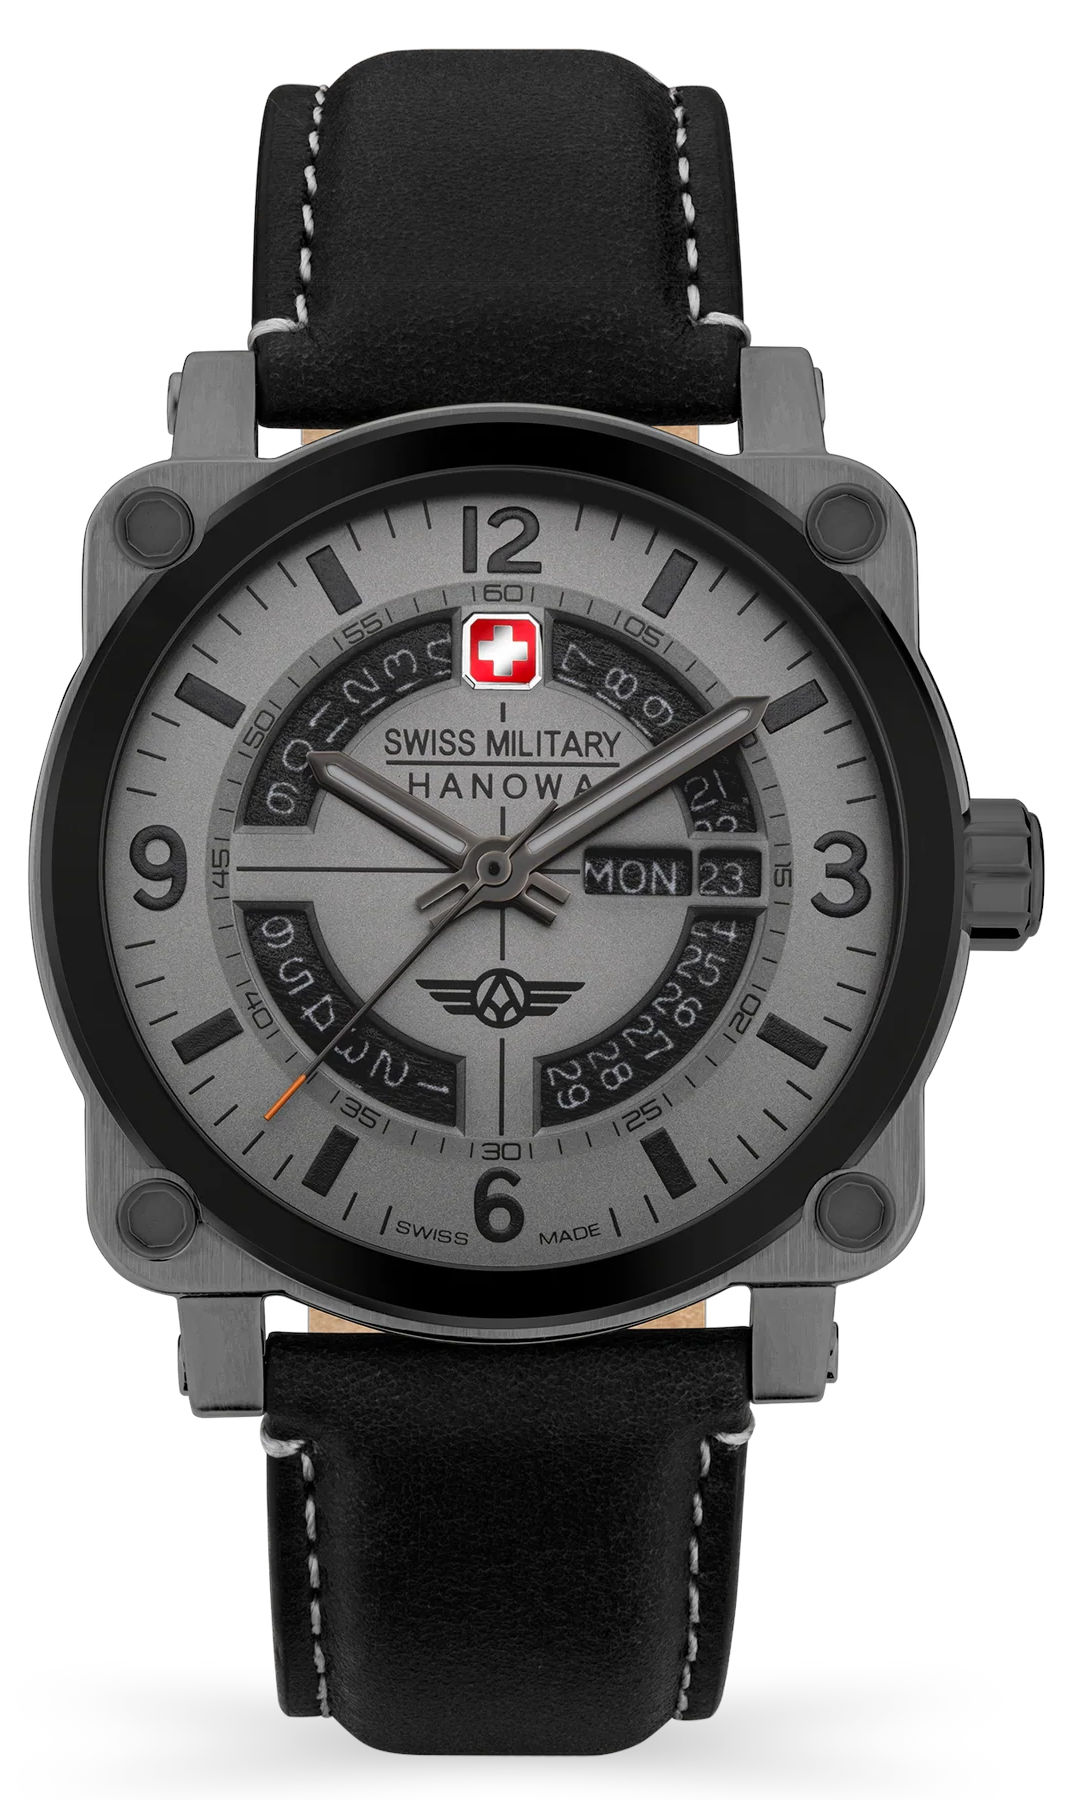  Swiss Military Hanowa SMWGB2101140